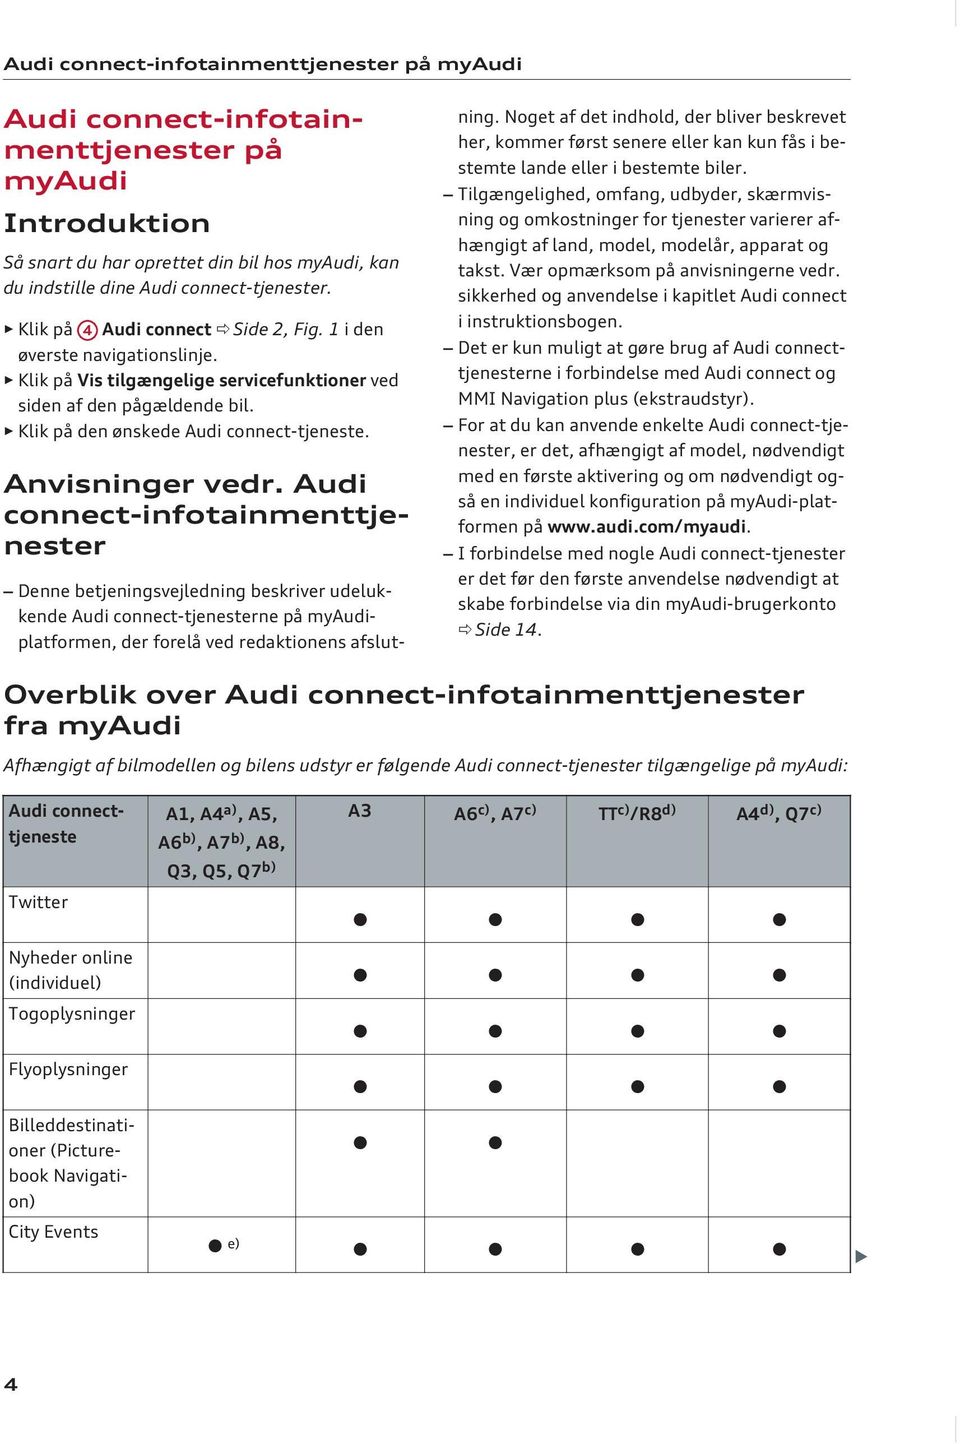 Audi connect-infotainmenttjenester Denne betjeningsvejledning beskriver udelukkende Audi connect-tjenesterne på myaudiplatformen, der forelå ved redaktionens afslutning.